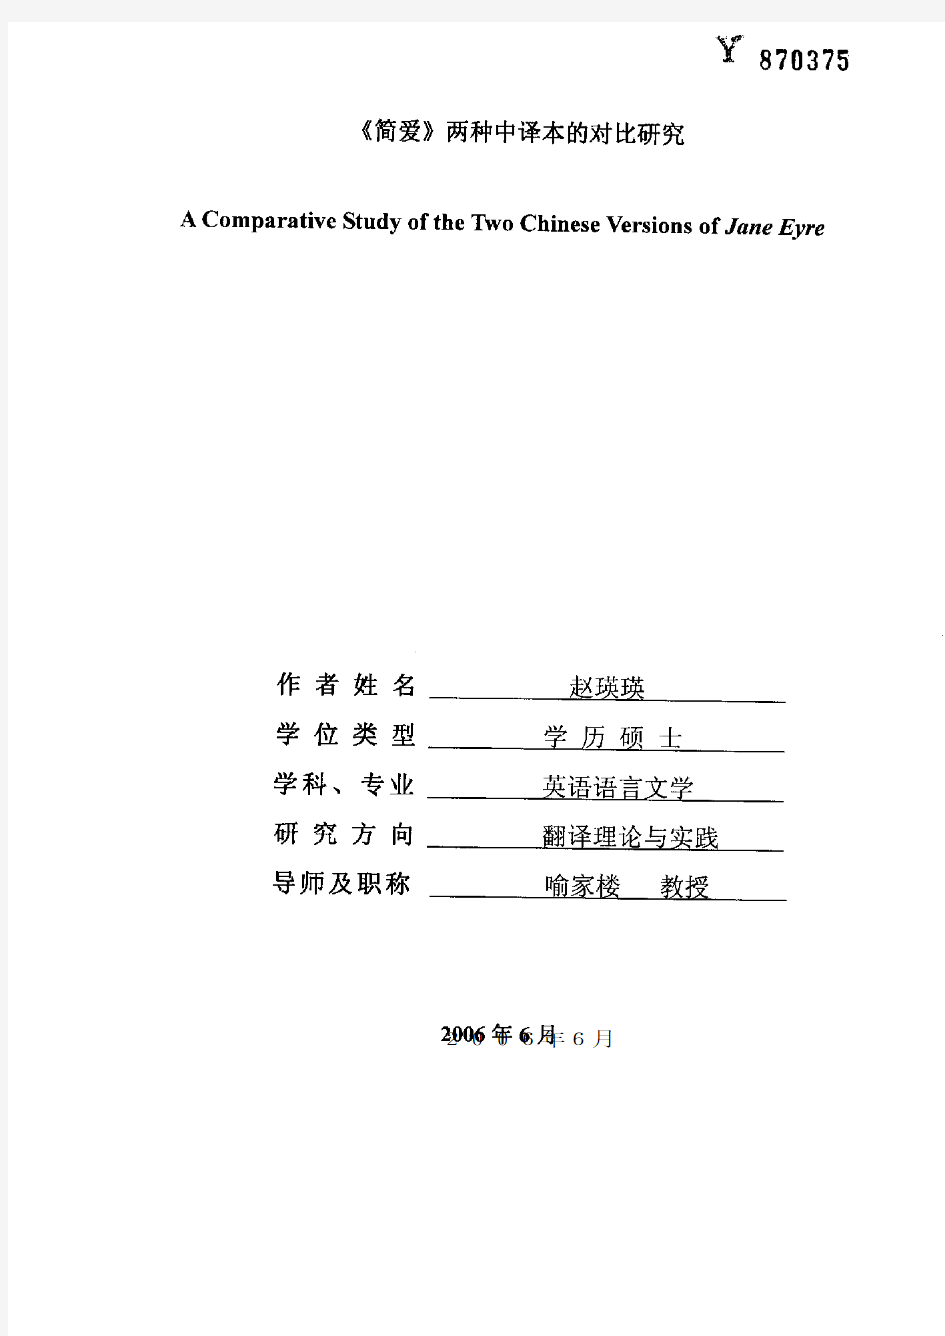 《简爱》两种中译本的对比研究